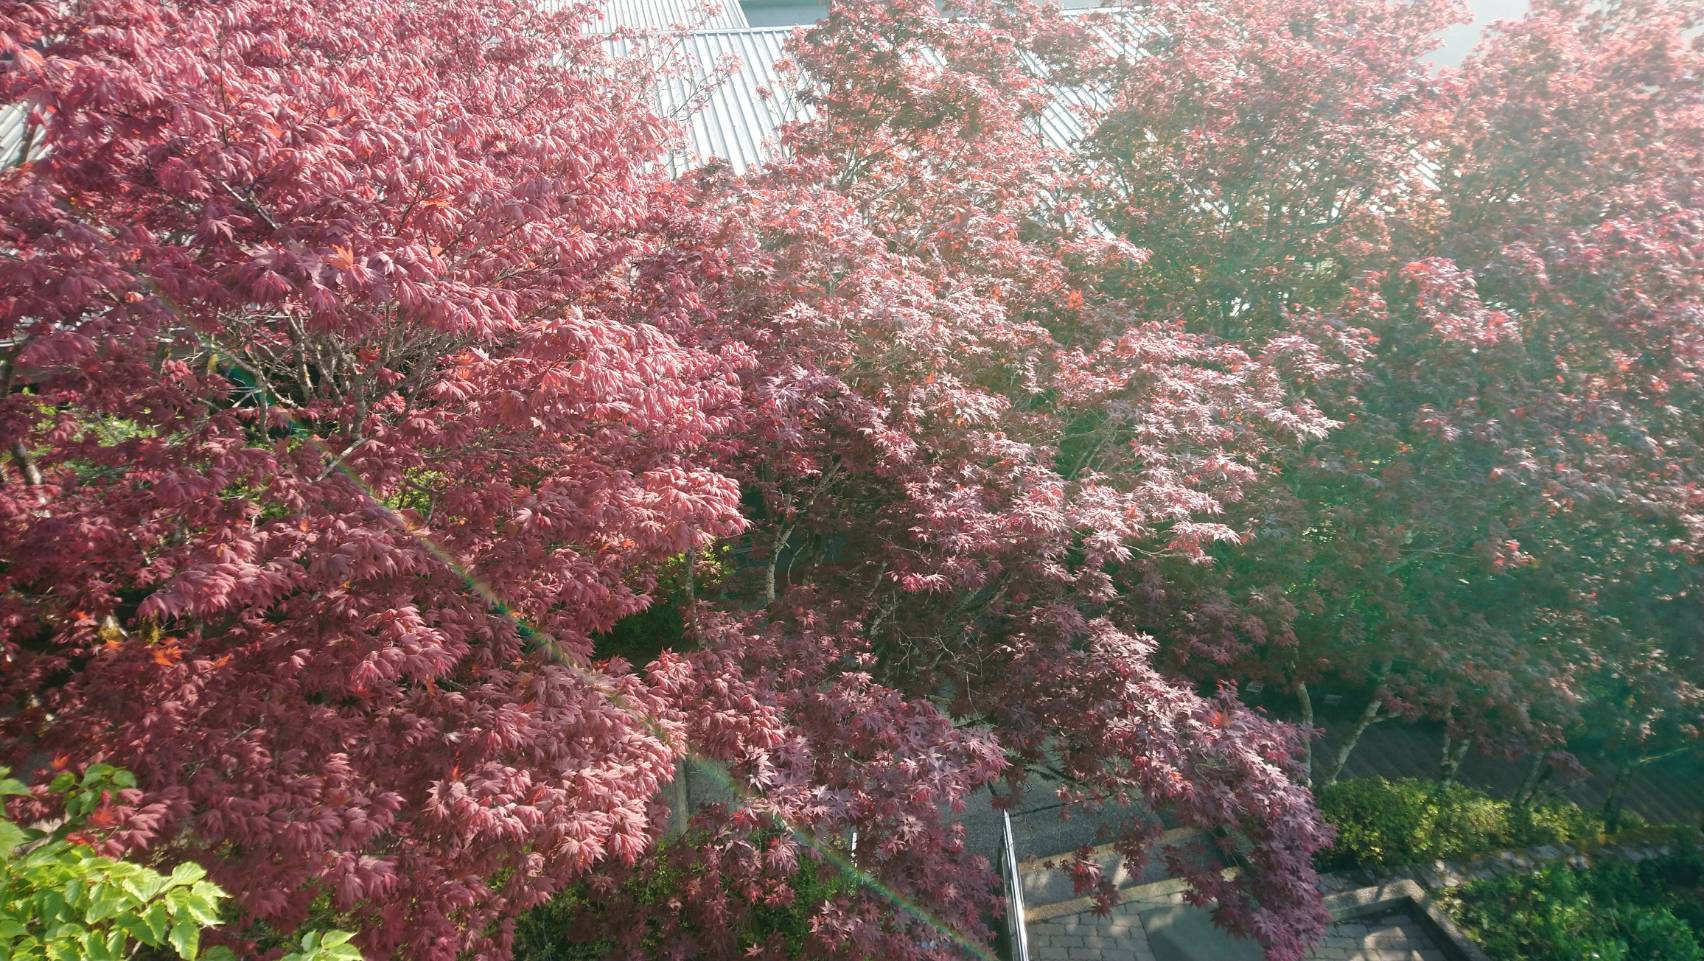 太平山紫葉槭綻放